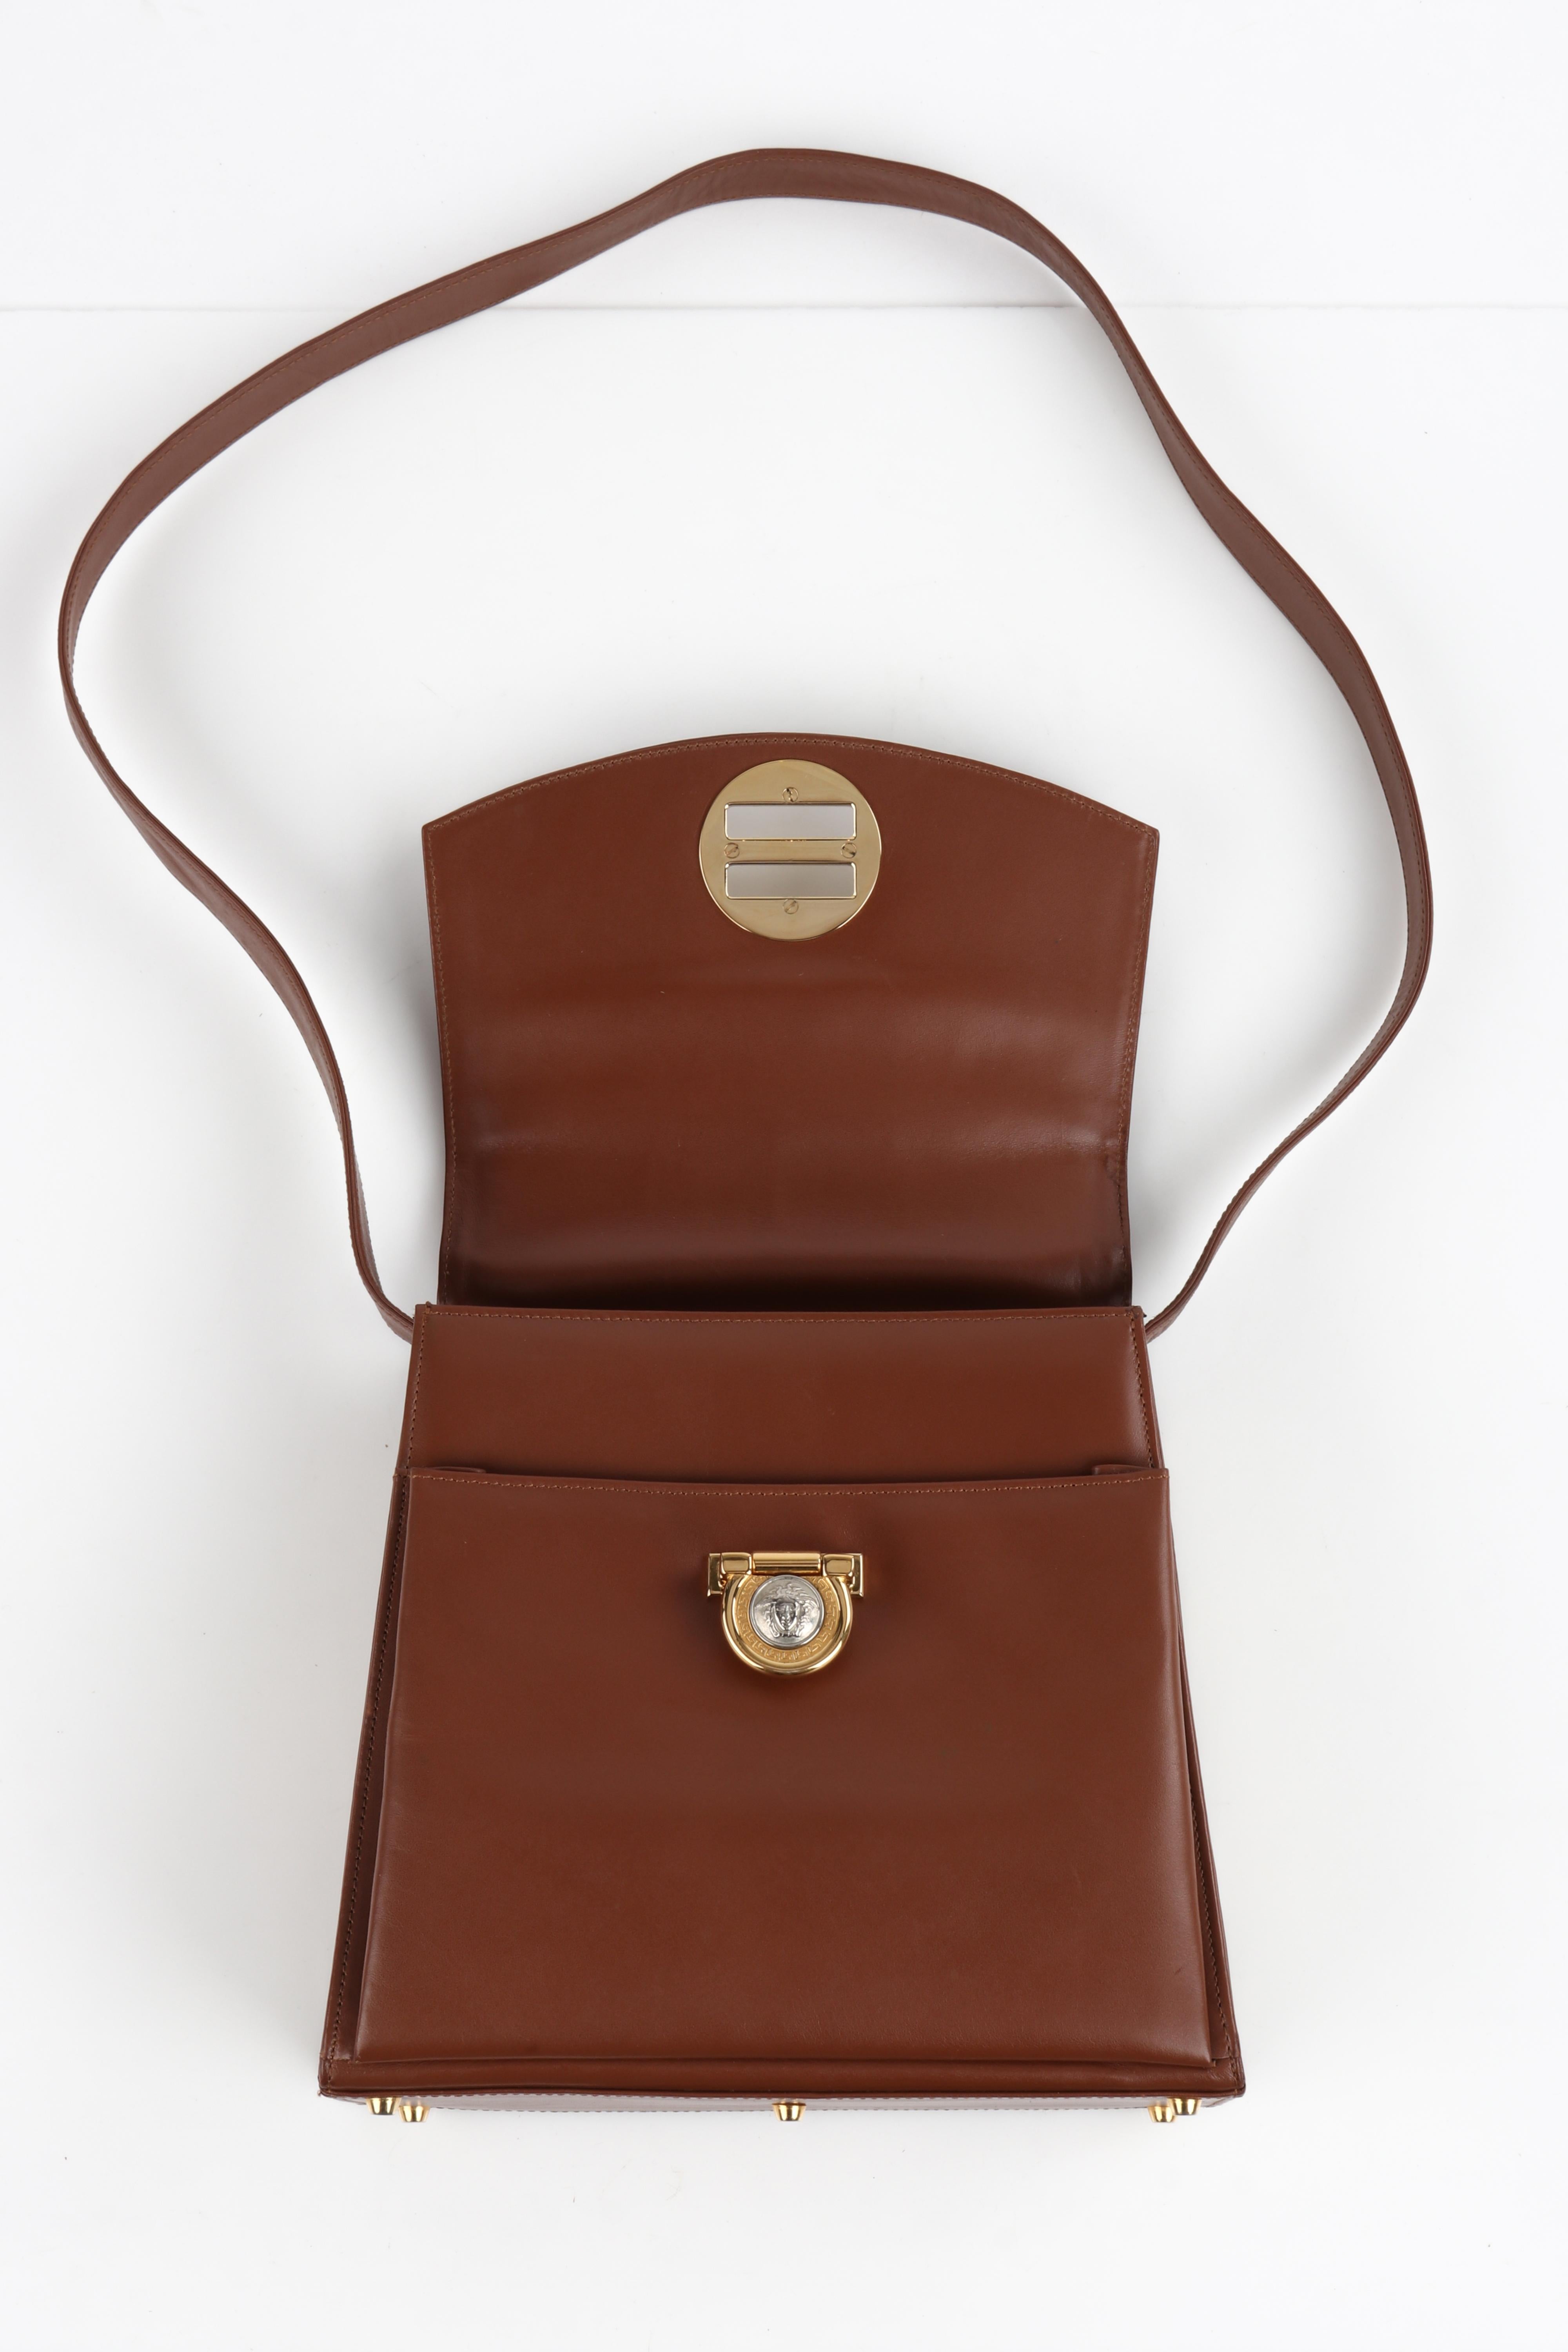 GIANNI VERSACE c.1993 Brown Leather Medusa Emblem Coin Lock Shoulder Bag Purse For Sale 6